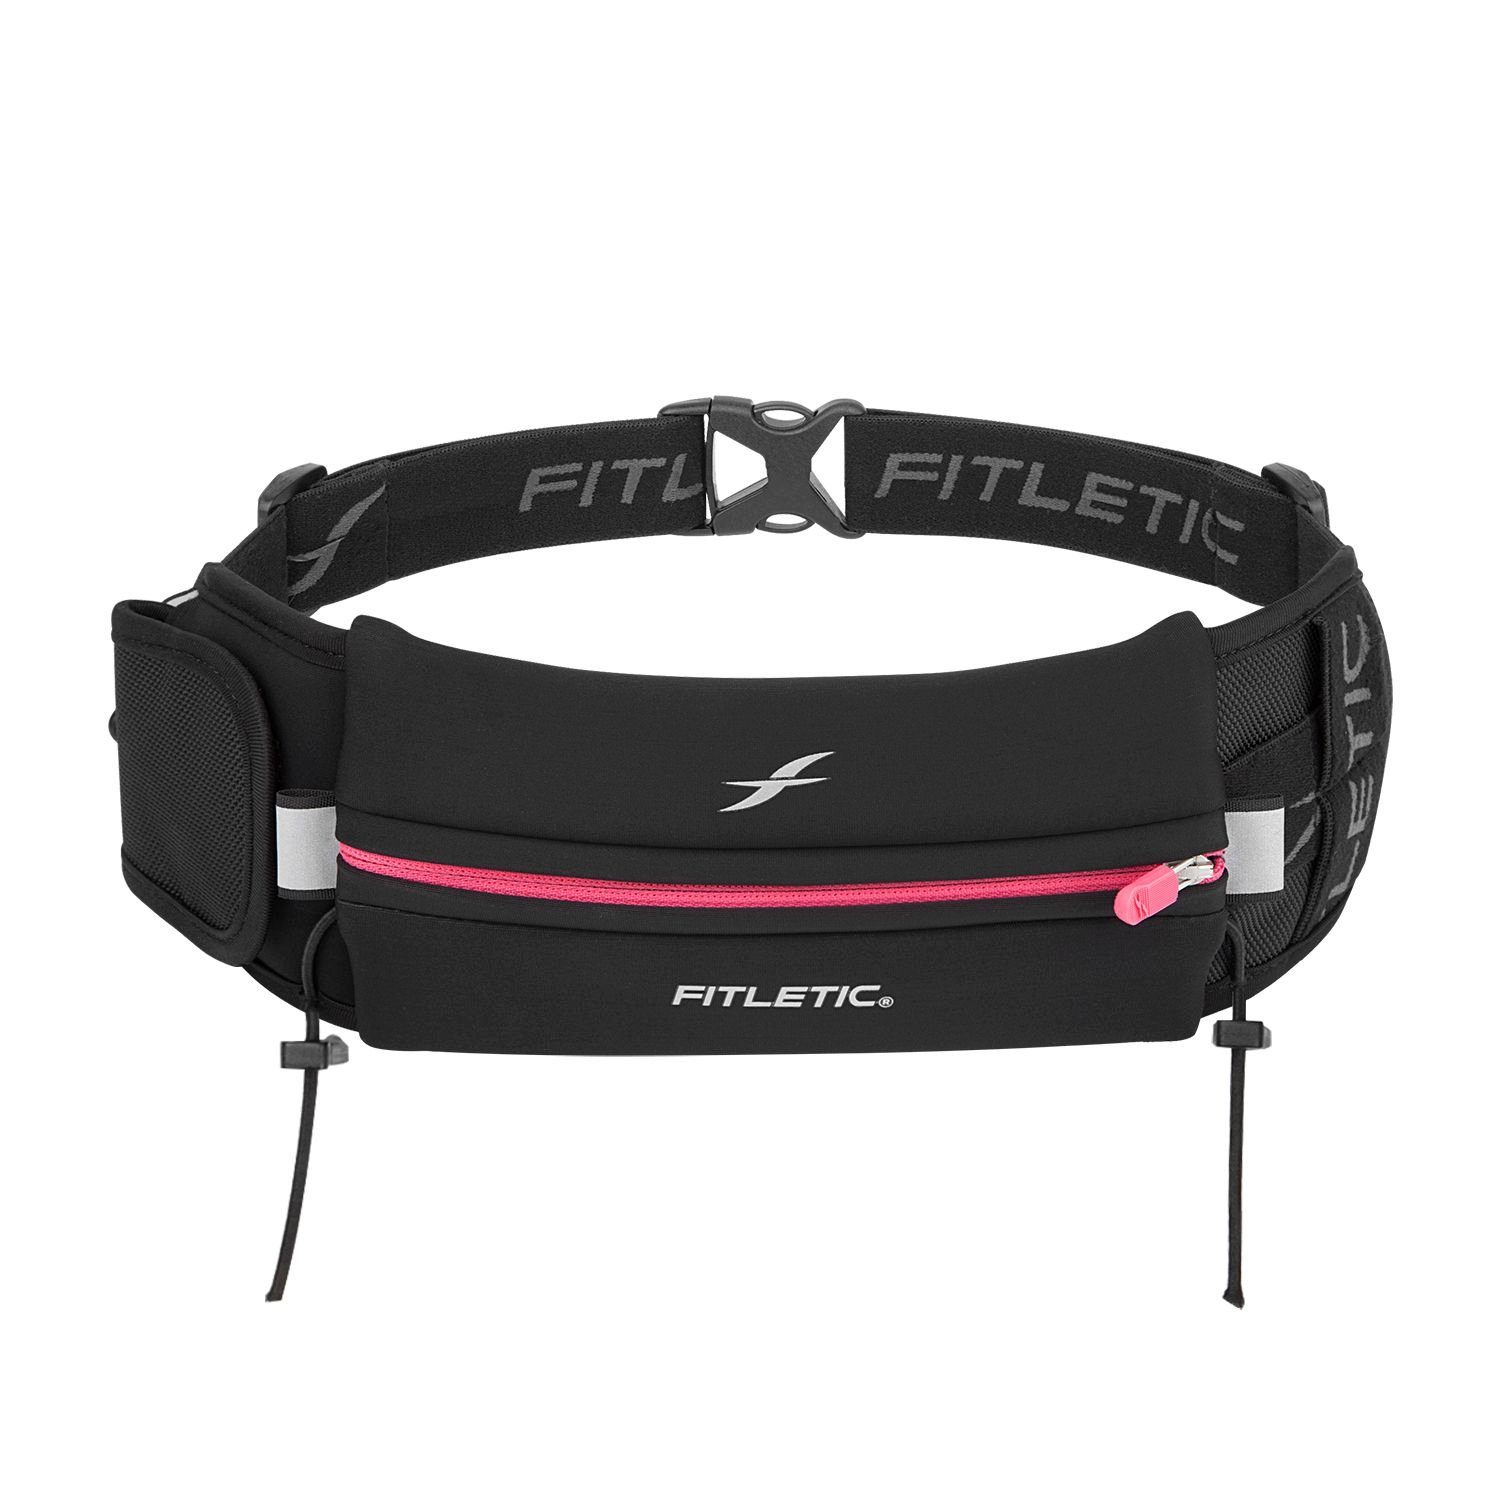 "Ultimate Fitnessgürtel Laufgürtel für Schwarz 2" Sportgürtel, Laufausrüstung Handy, Laufgürtel Premium Fitletic /Pink